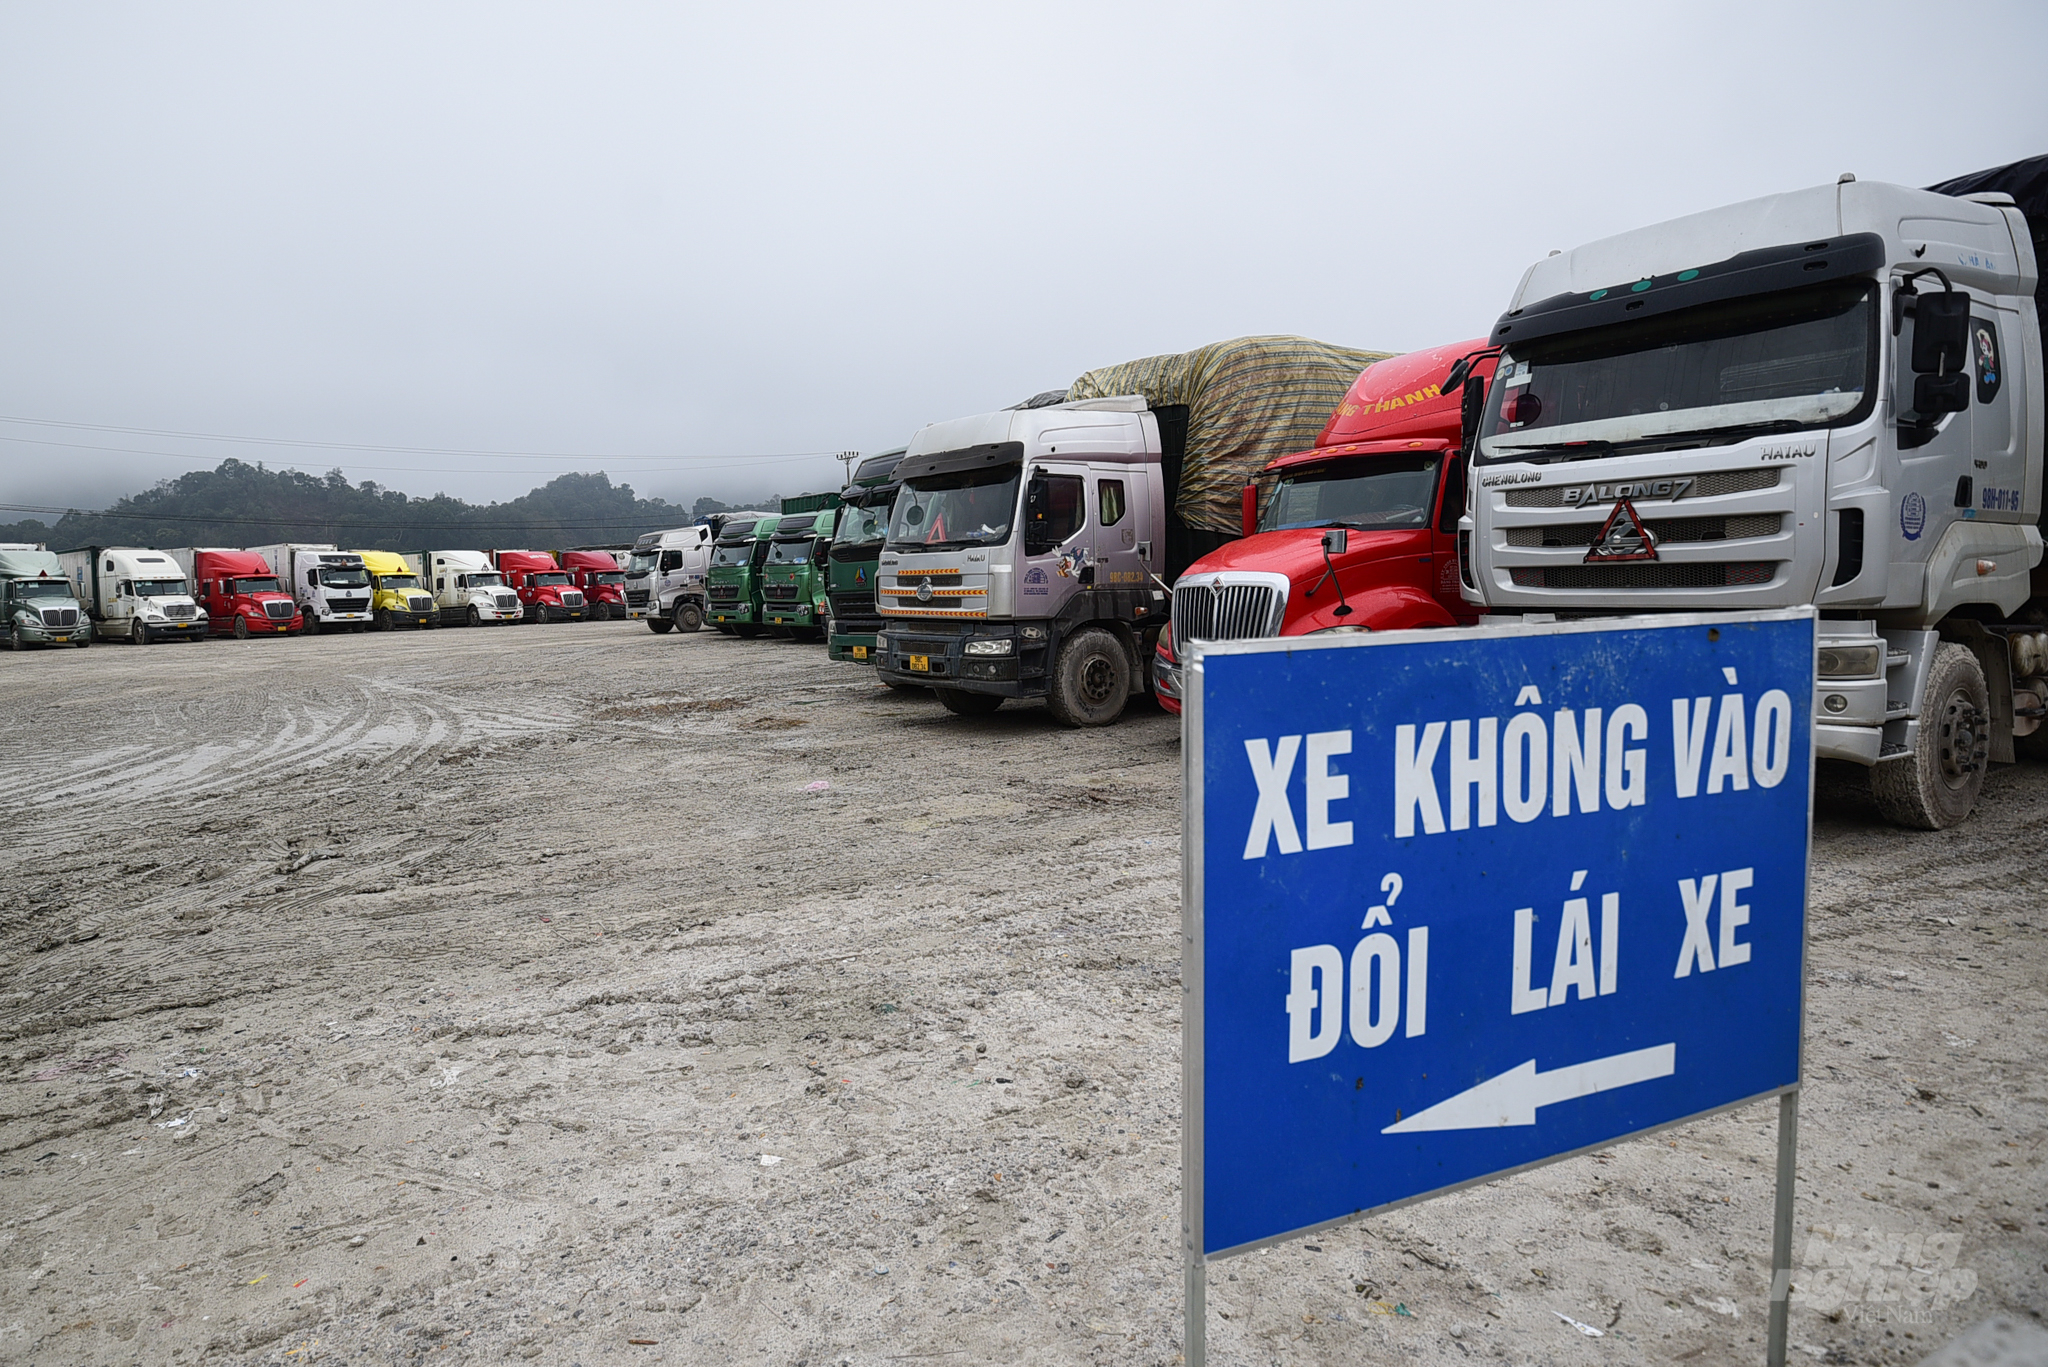 Hiện có khoảng 1.400 xe nông sản tươi đang chờ xuất khẩu ở các khu vực cửa khẩu của Lạng Sơn. Ảnh: Tùng Đinh.